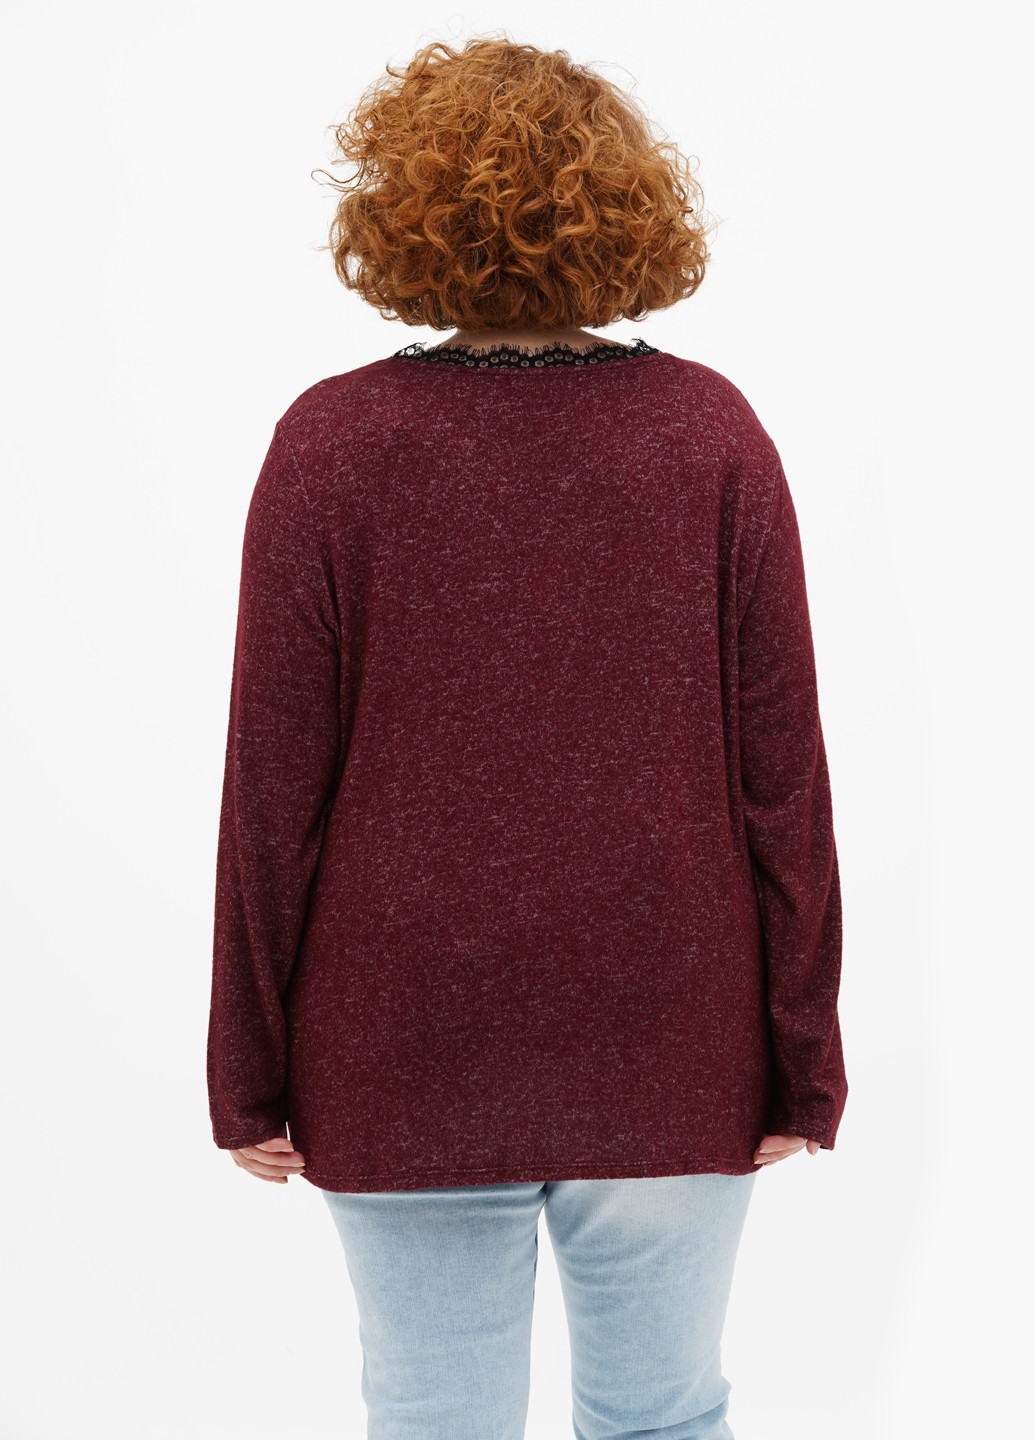 Бордовый демисезонный пуловер пуловер S.Oliver